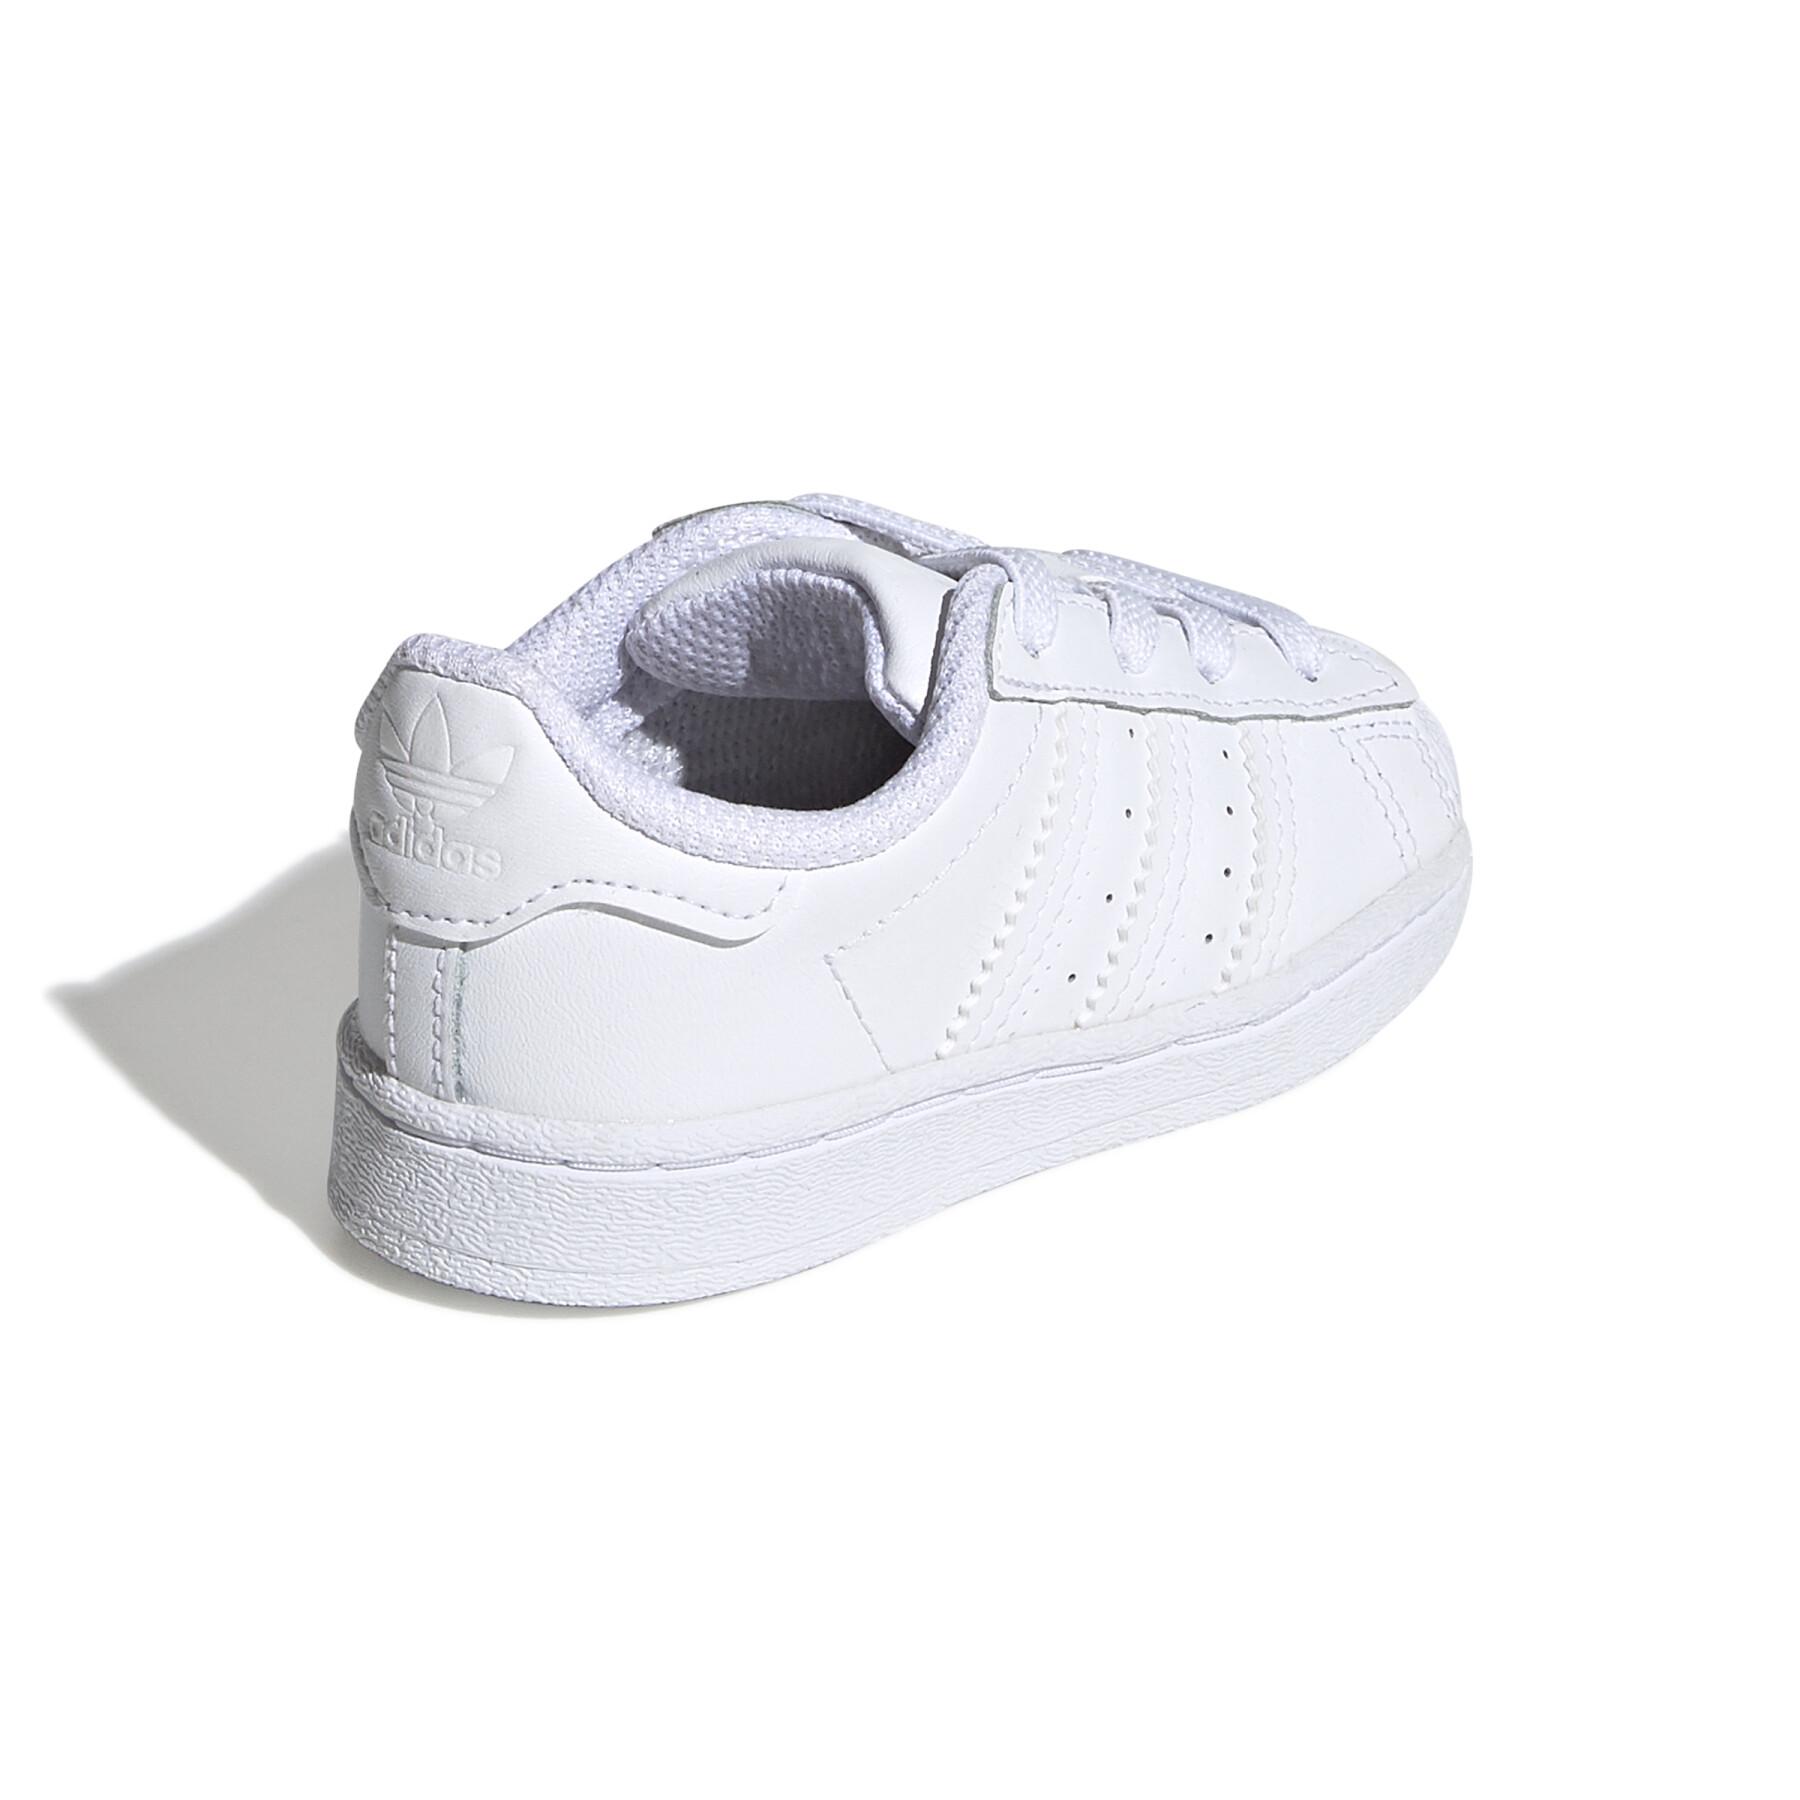 Baby sneakers adidas Originals Superstar